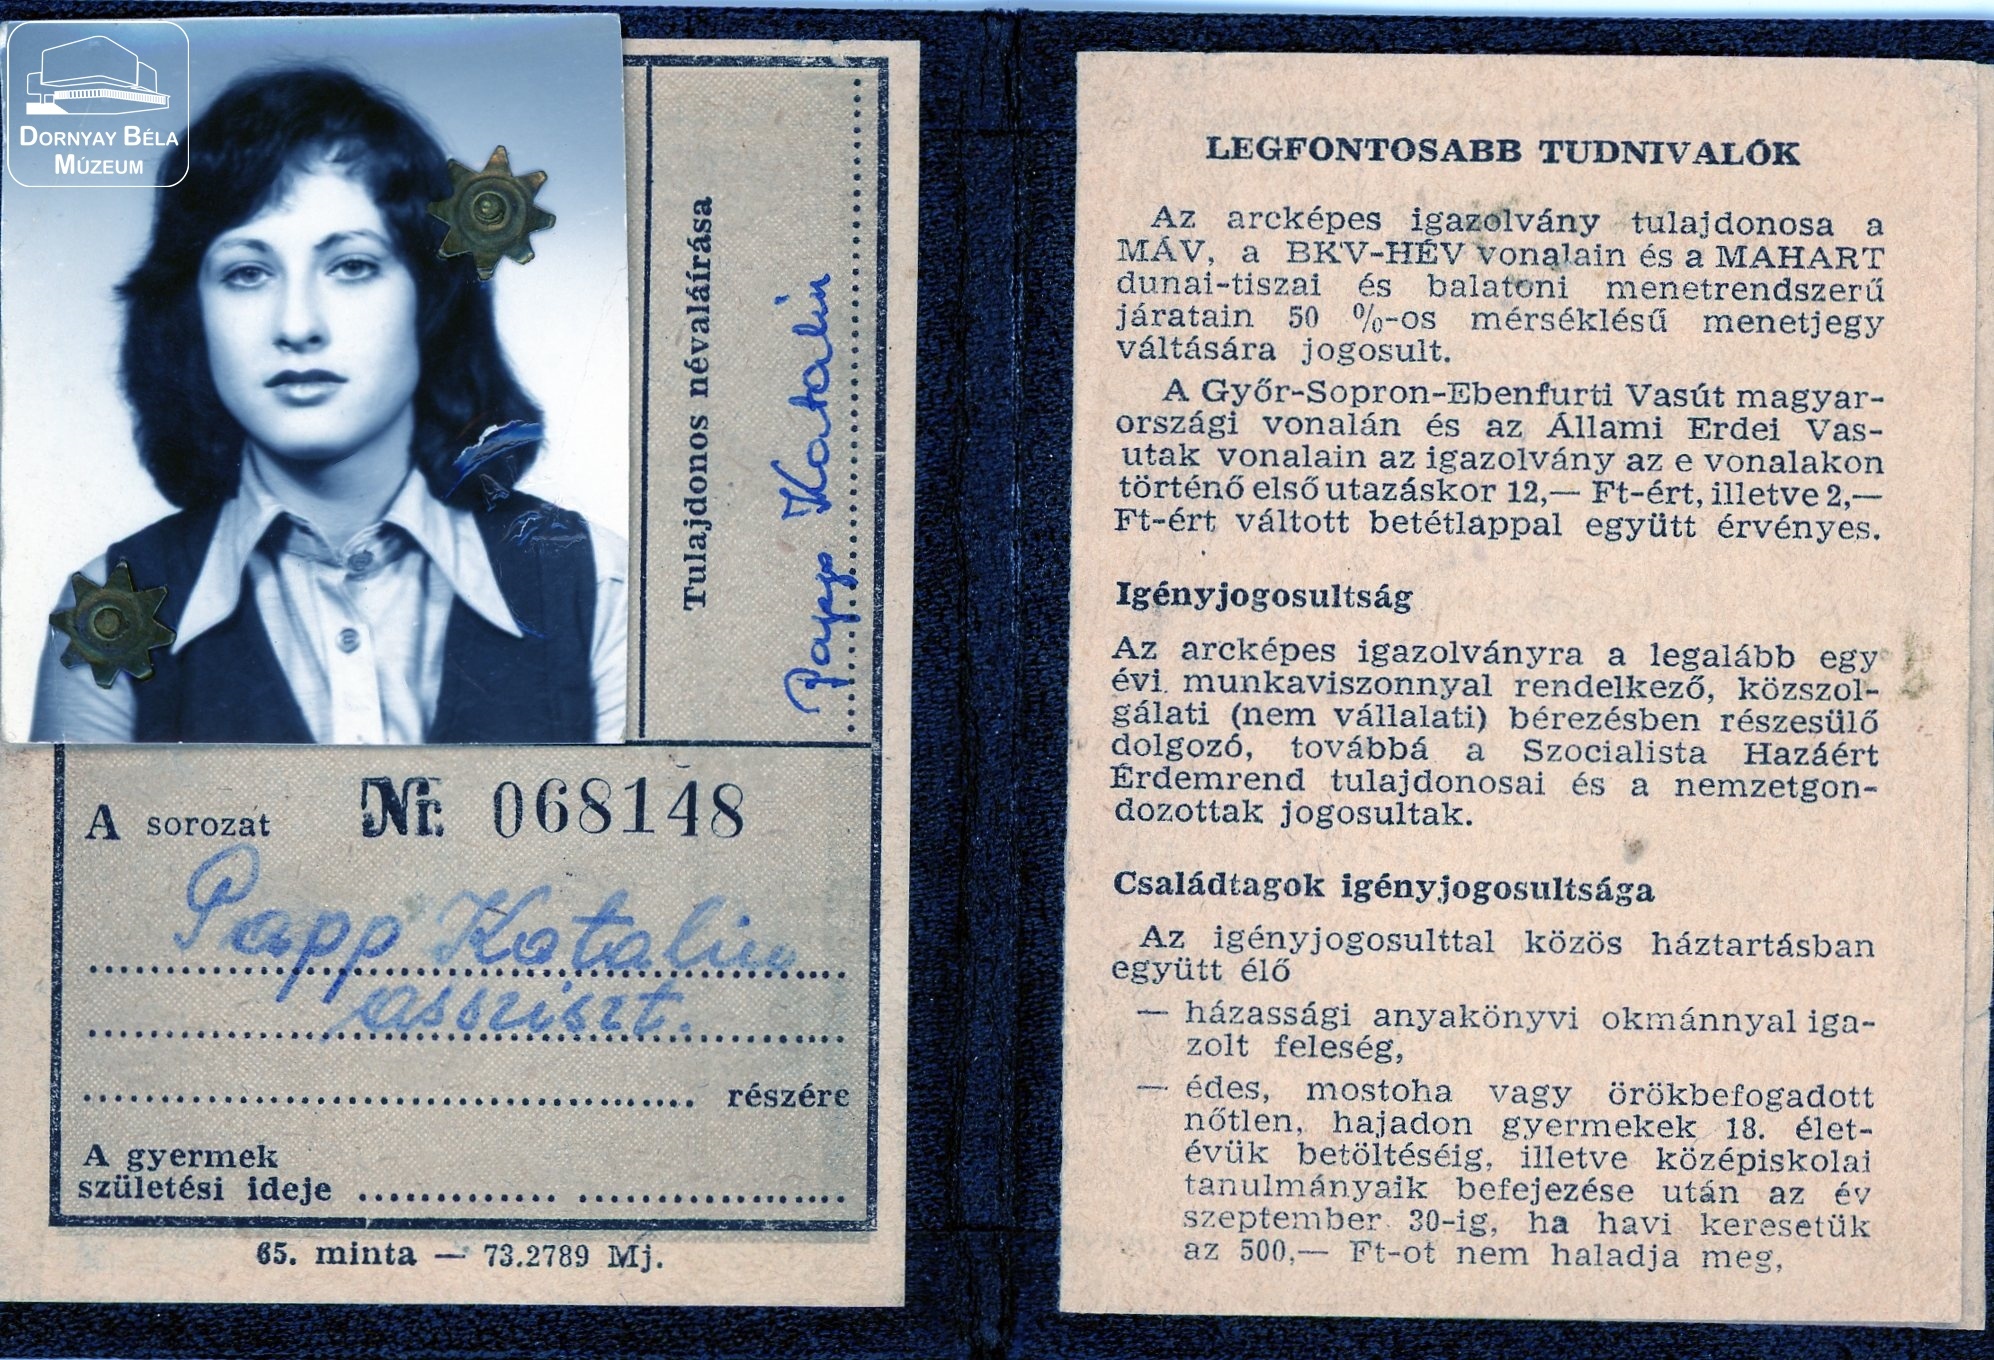 Papp Katalin MÁV igazolványa (Dornyay Béla Múzeum, Salgótarján CC BY-NC-SA)